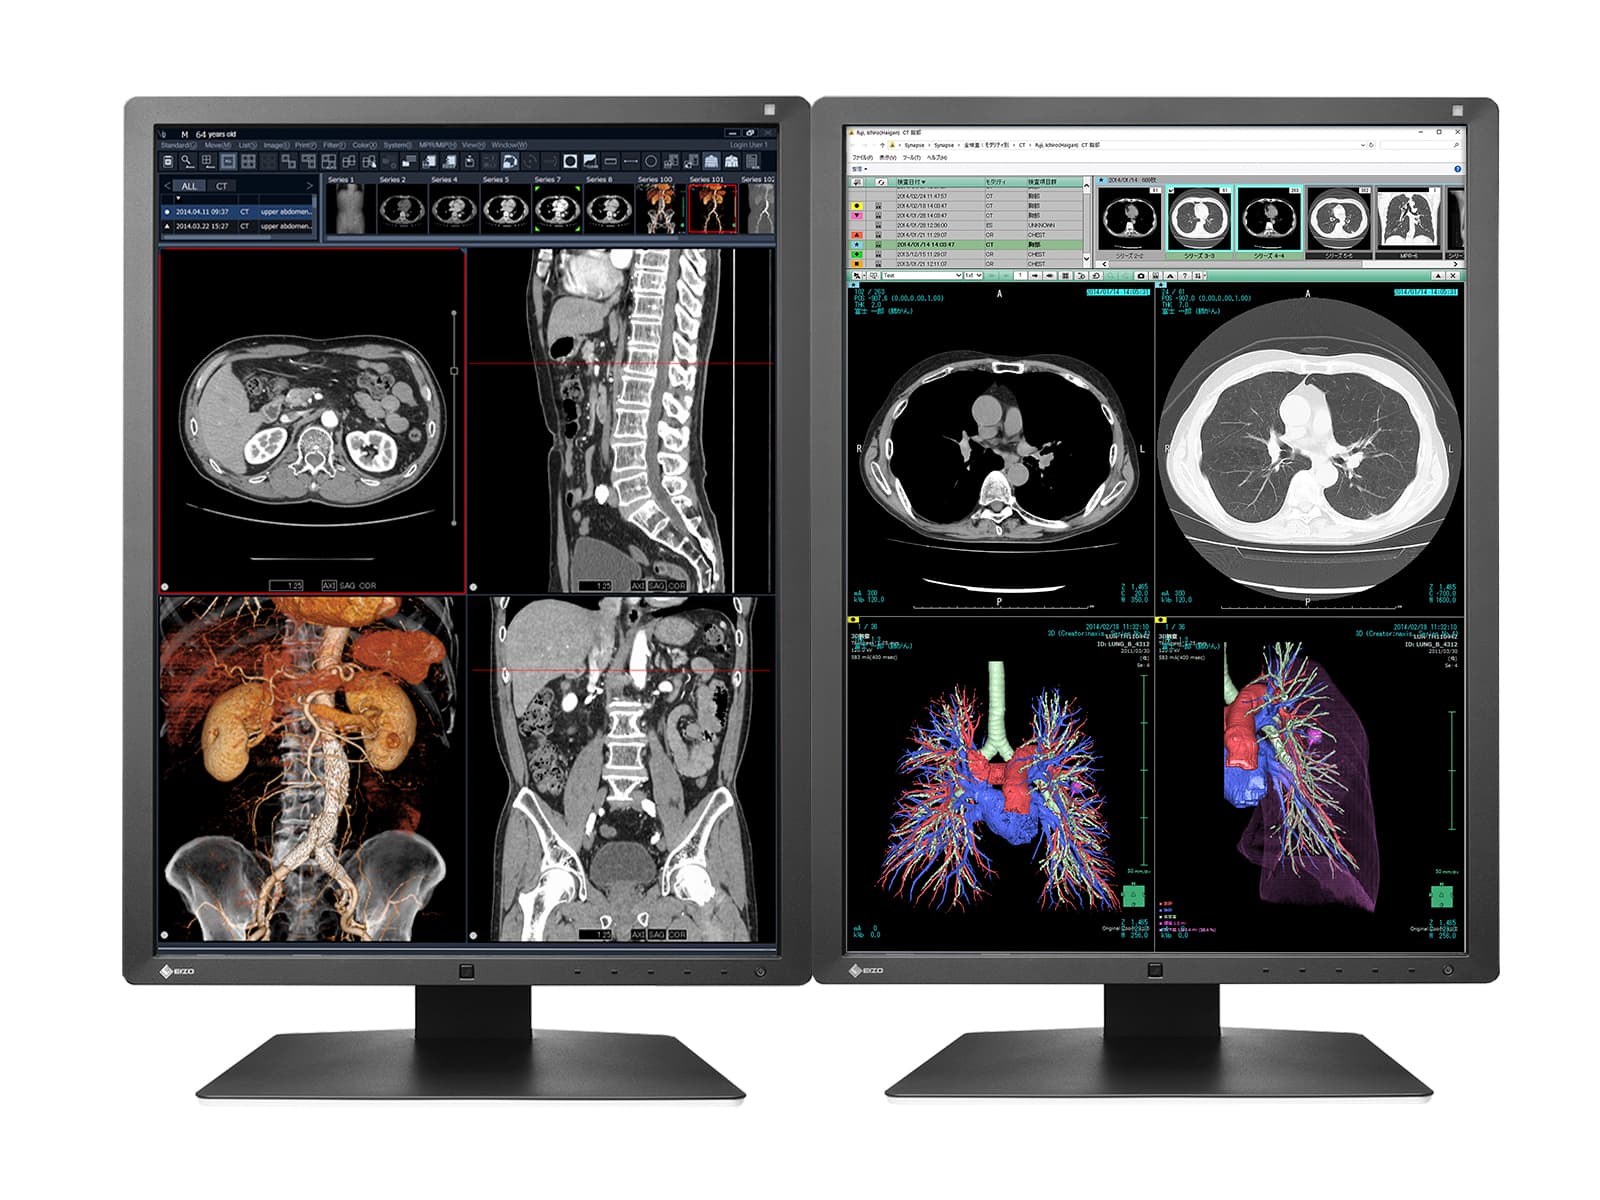 Eizo RadiForce RX250 2MP 21" Moniteur d'affichage de radiologie diagnostique médical LED couleur (RX250-BK)